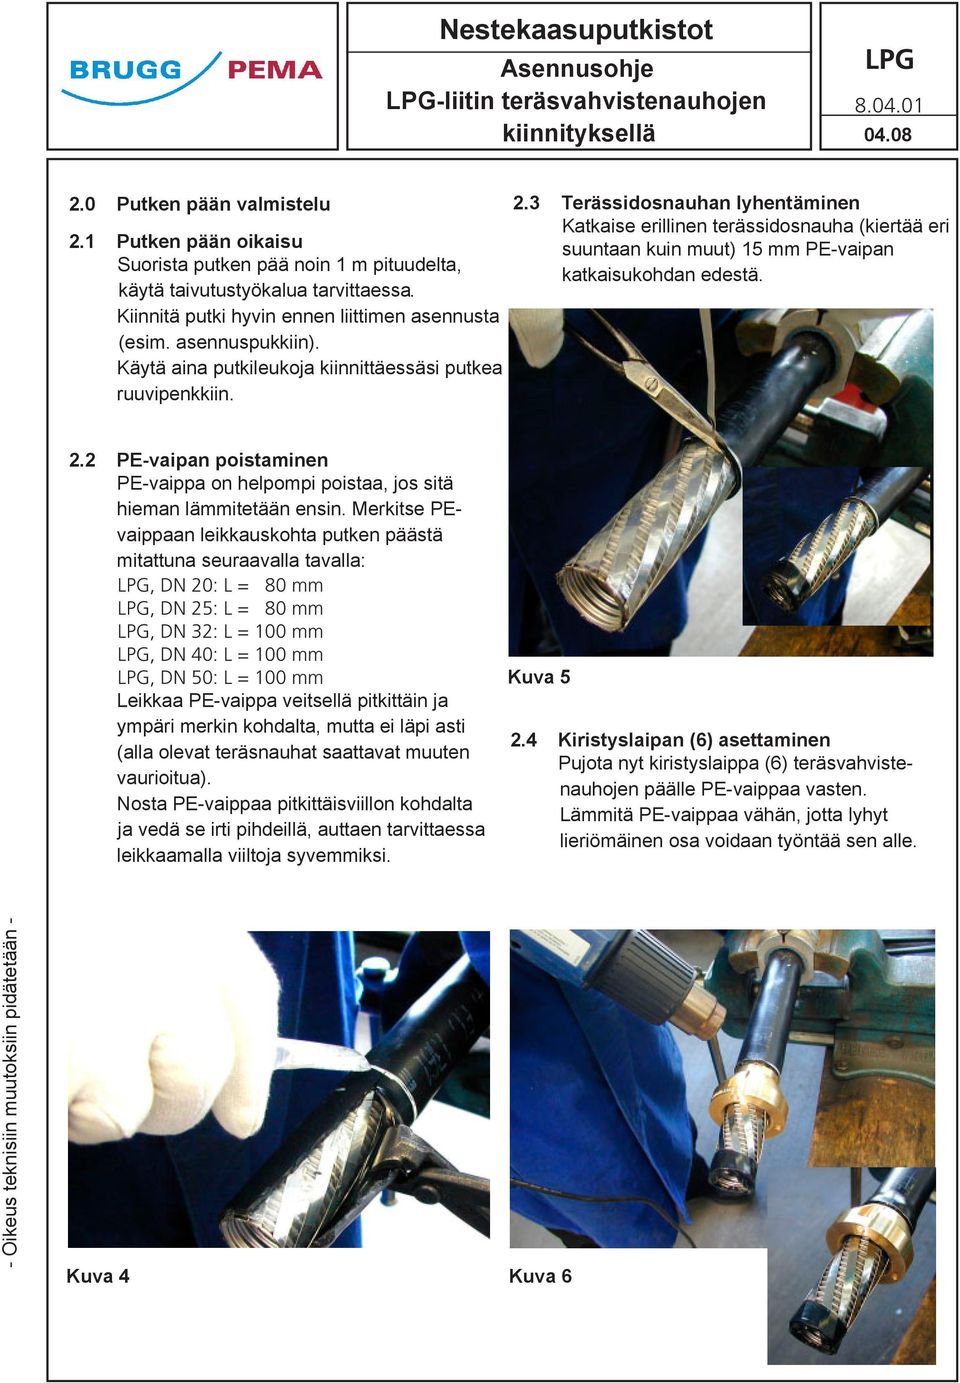 3 Terässidosnauhan lyhentäminen Katkaise erillinen terässidosnauha (kiertää eri suuntaan kuin muut) 15 mm PE-vaipan katkaisukohdan edestä. 2.